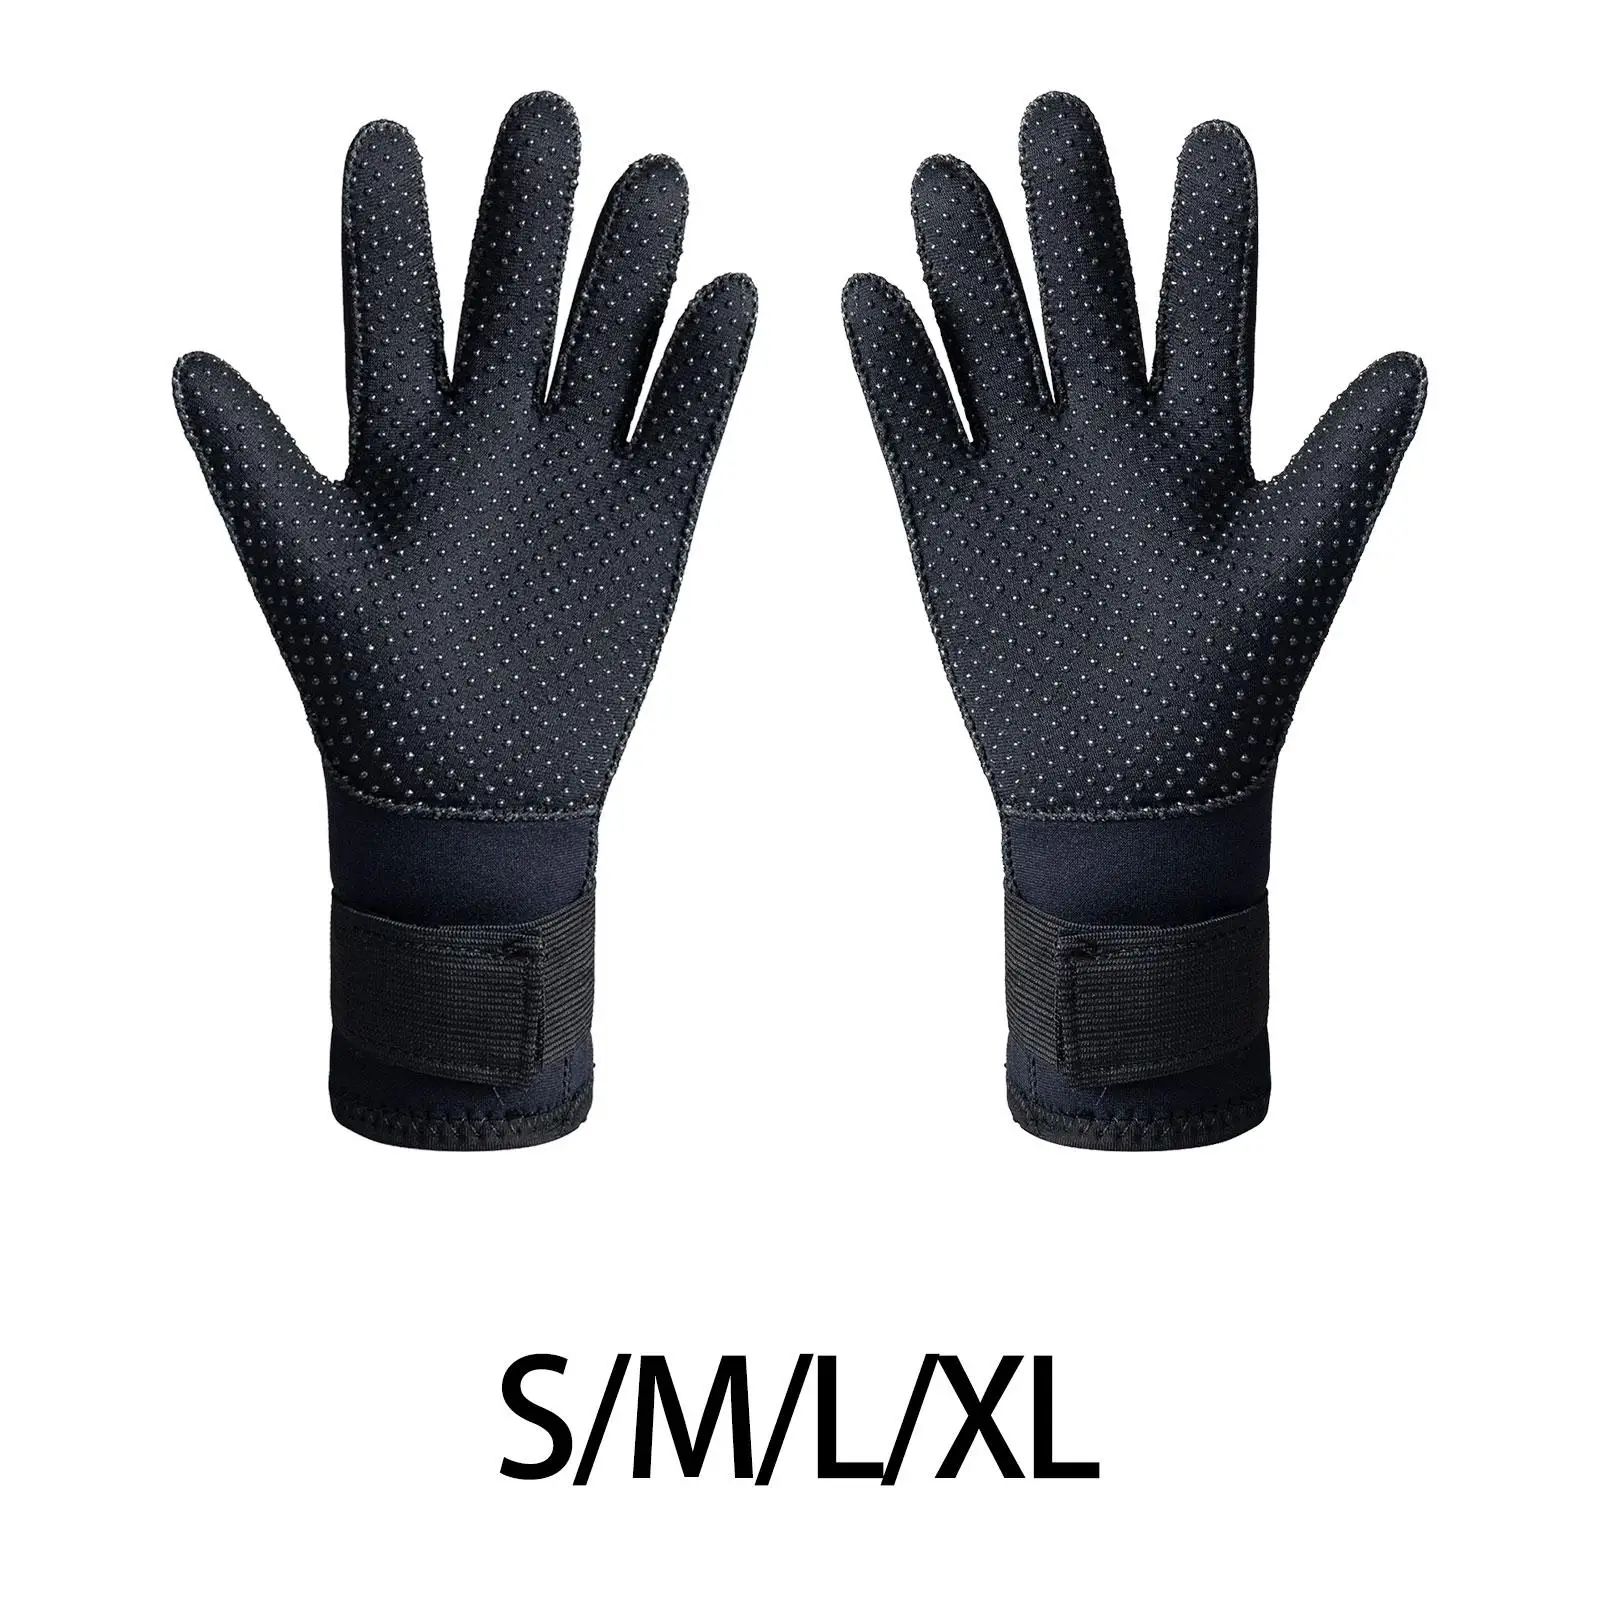 

Neoprene Gloves 3mm Wetsuit Gloves Thermal Antiskid Diving Gloves Swim Gloves for Men Women Paddling Lap Swimming Skiing Canoe